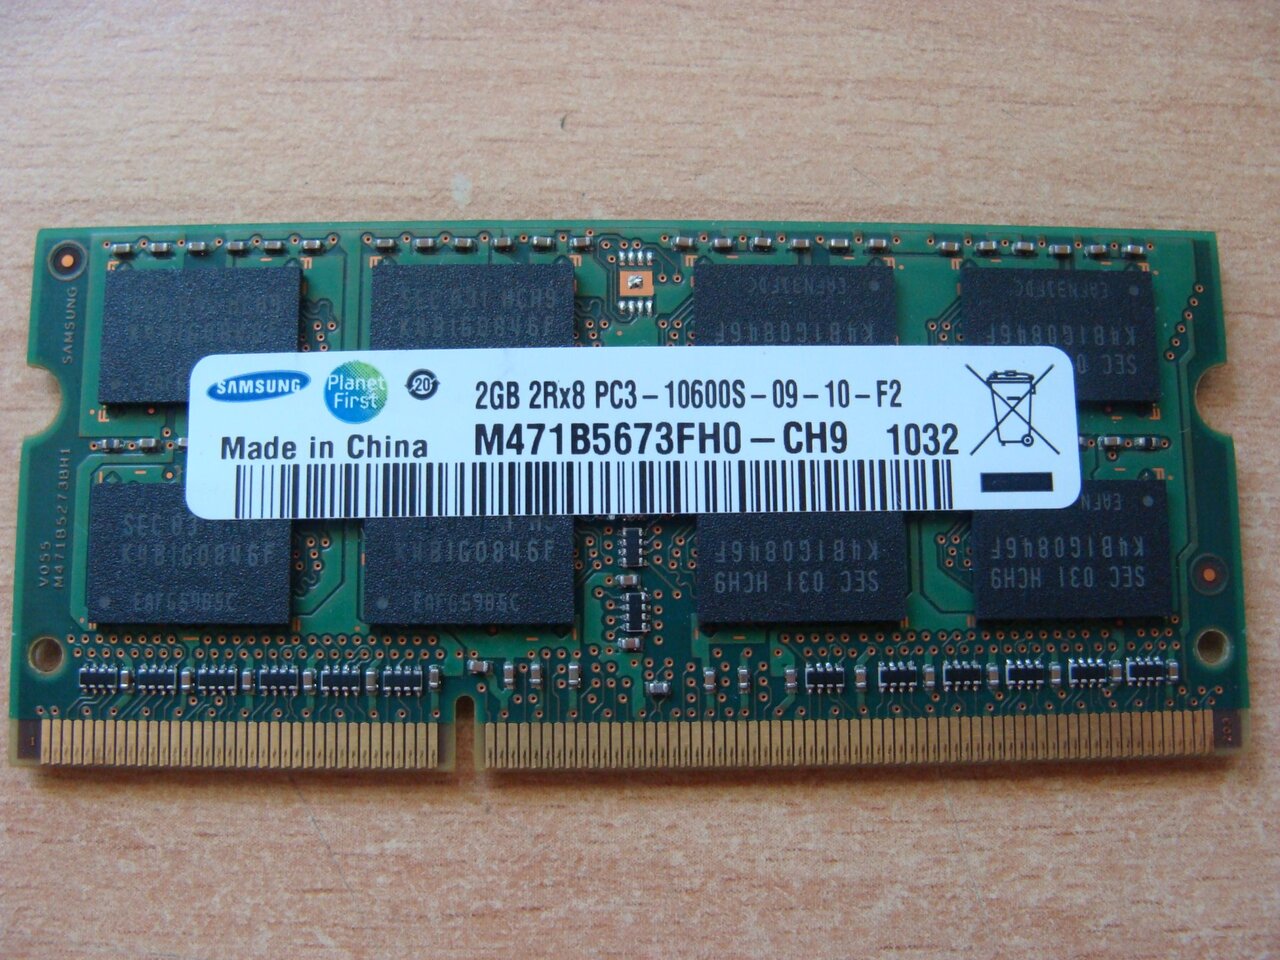 Sodimm ddr2 2gb. SODIMM ddr3 2gb. Самсунг so-DIMM 2gb. So-DIMM ddr3 Оперативная память 2gb (-40 ~ +85˚c). Samsung ddr3 DIMM.